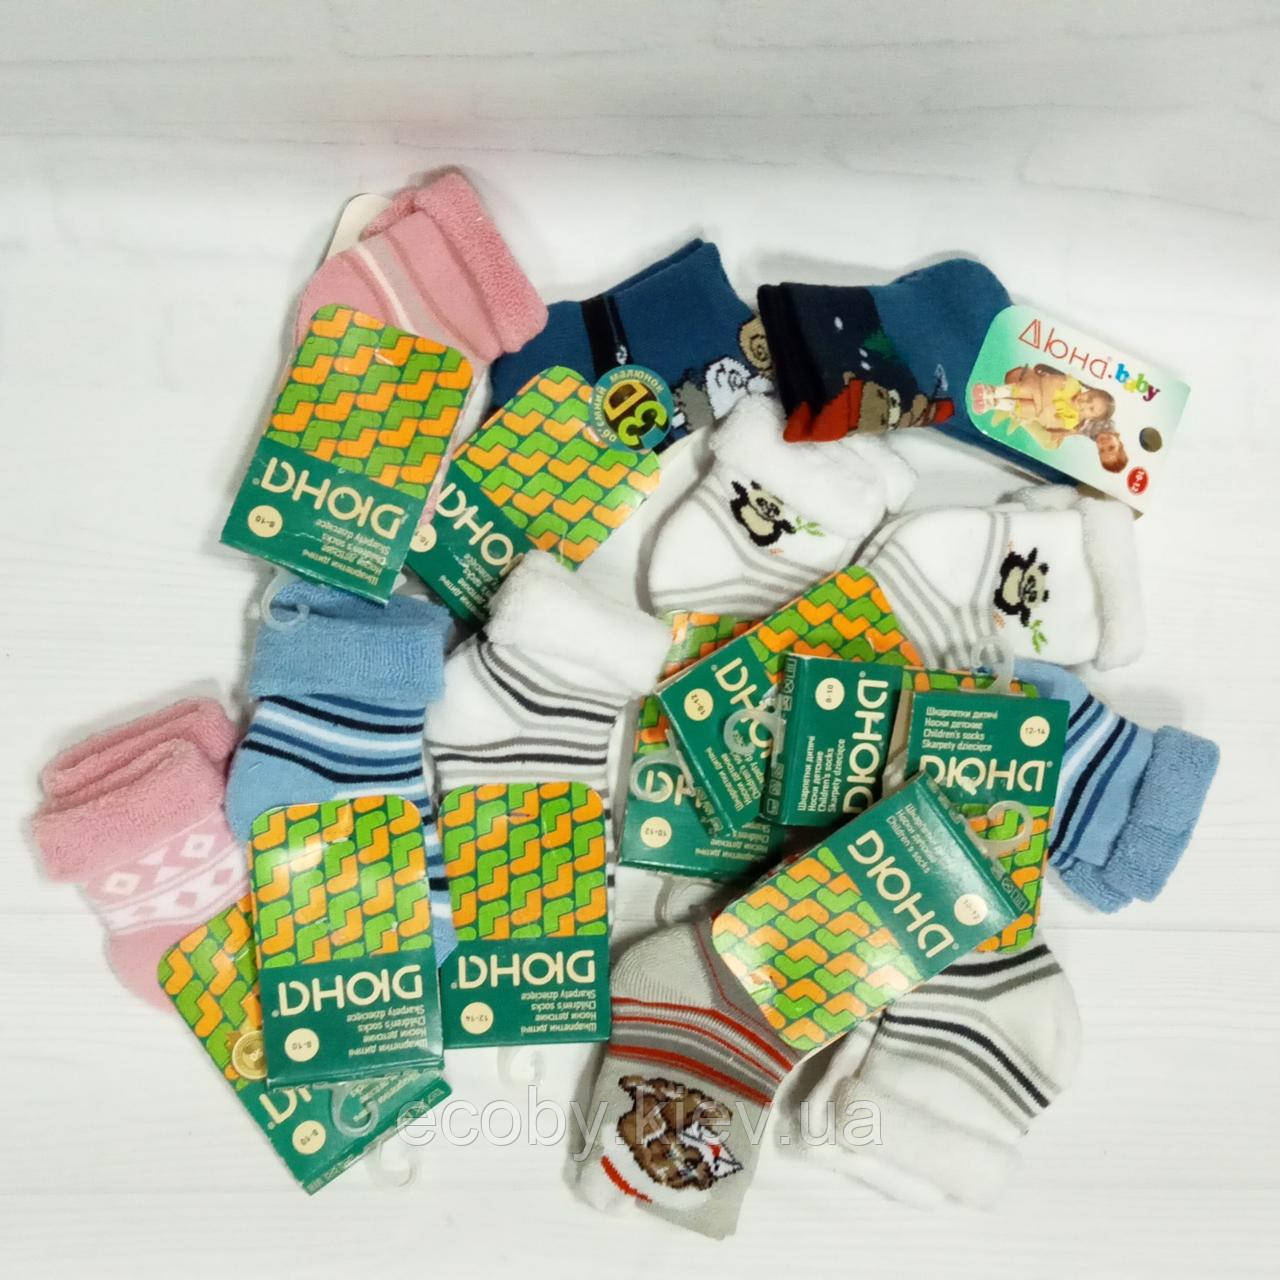 Дитячі шкарпетки  тм Duna, розміри 8-10, 10-12, 12-14, махрові.